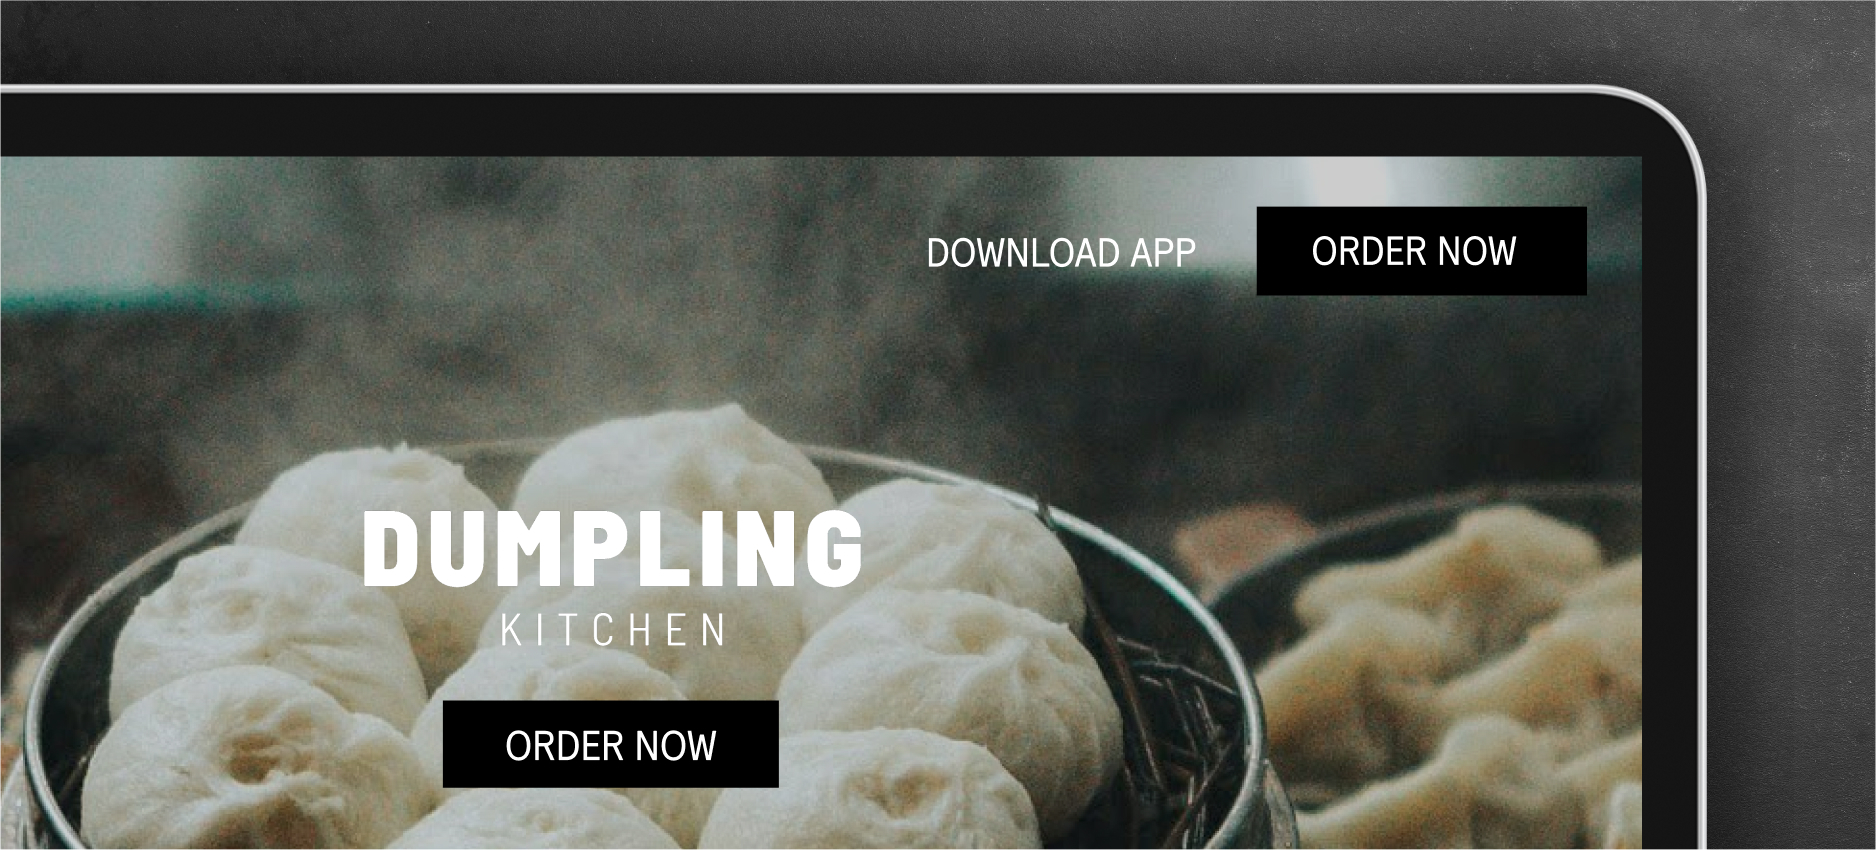 Restaurant website optimized for online ordering